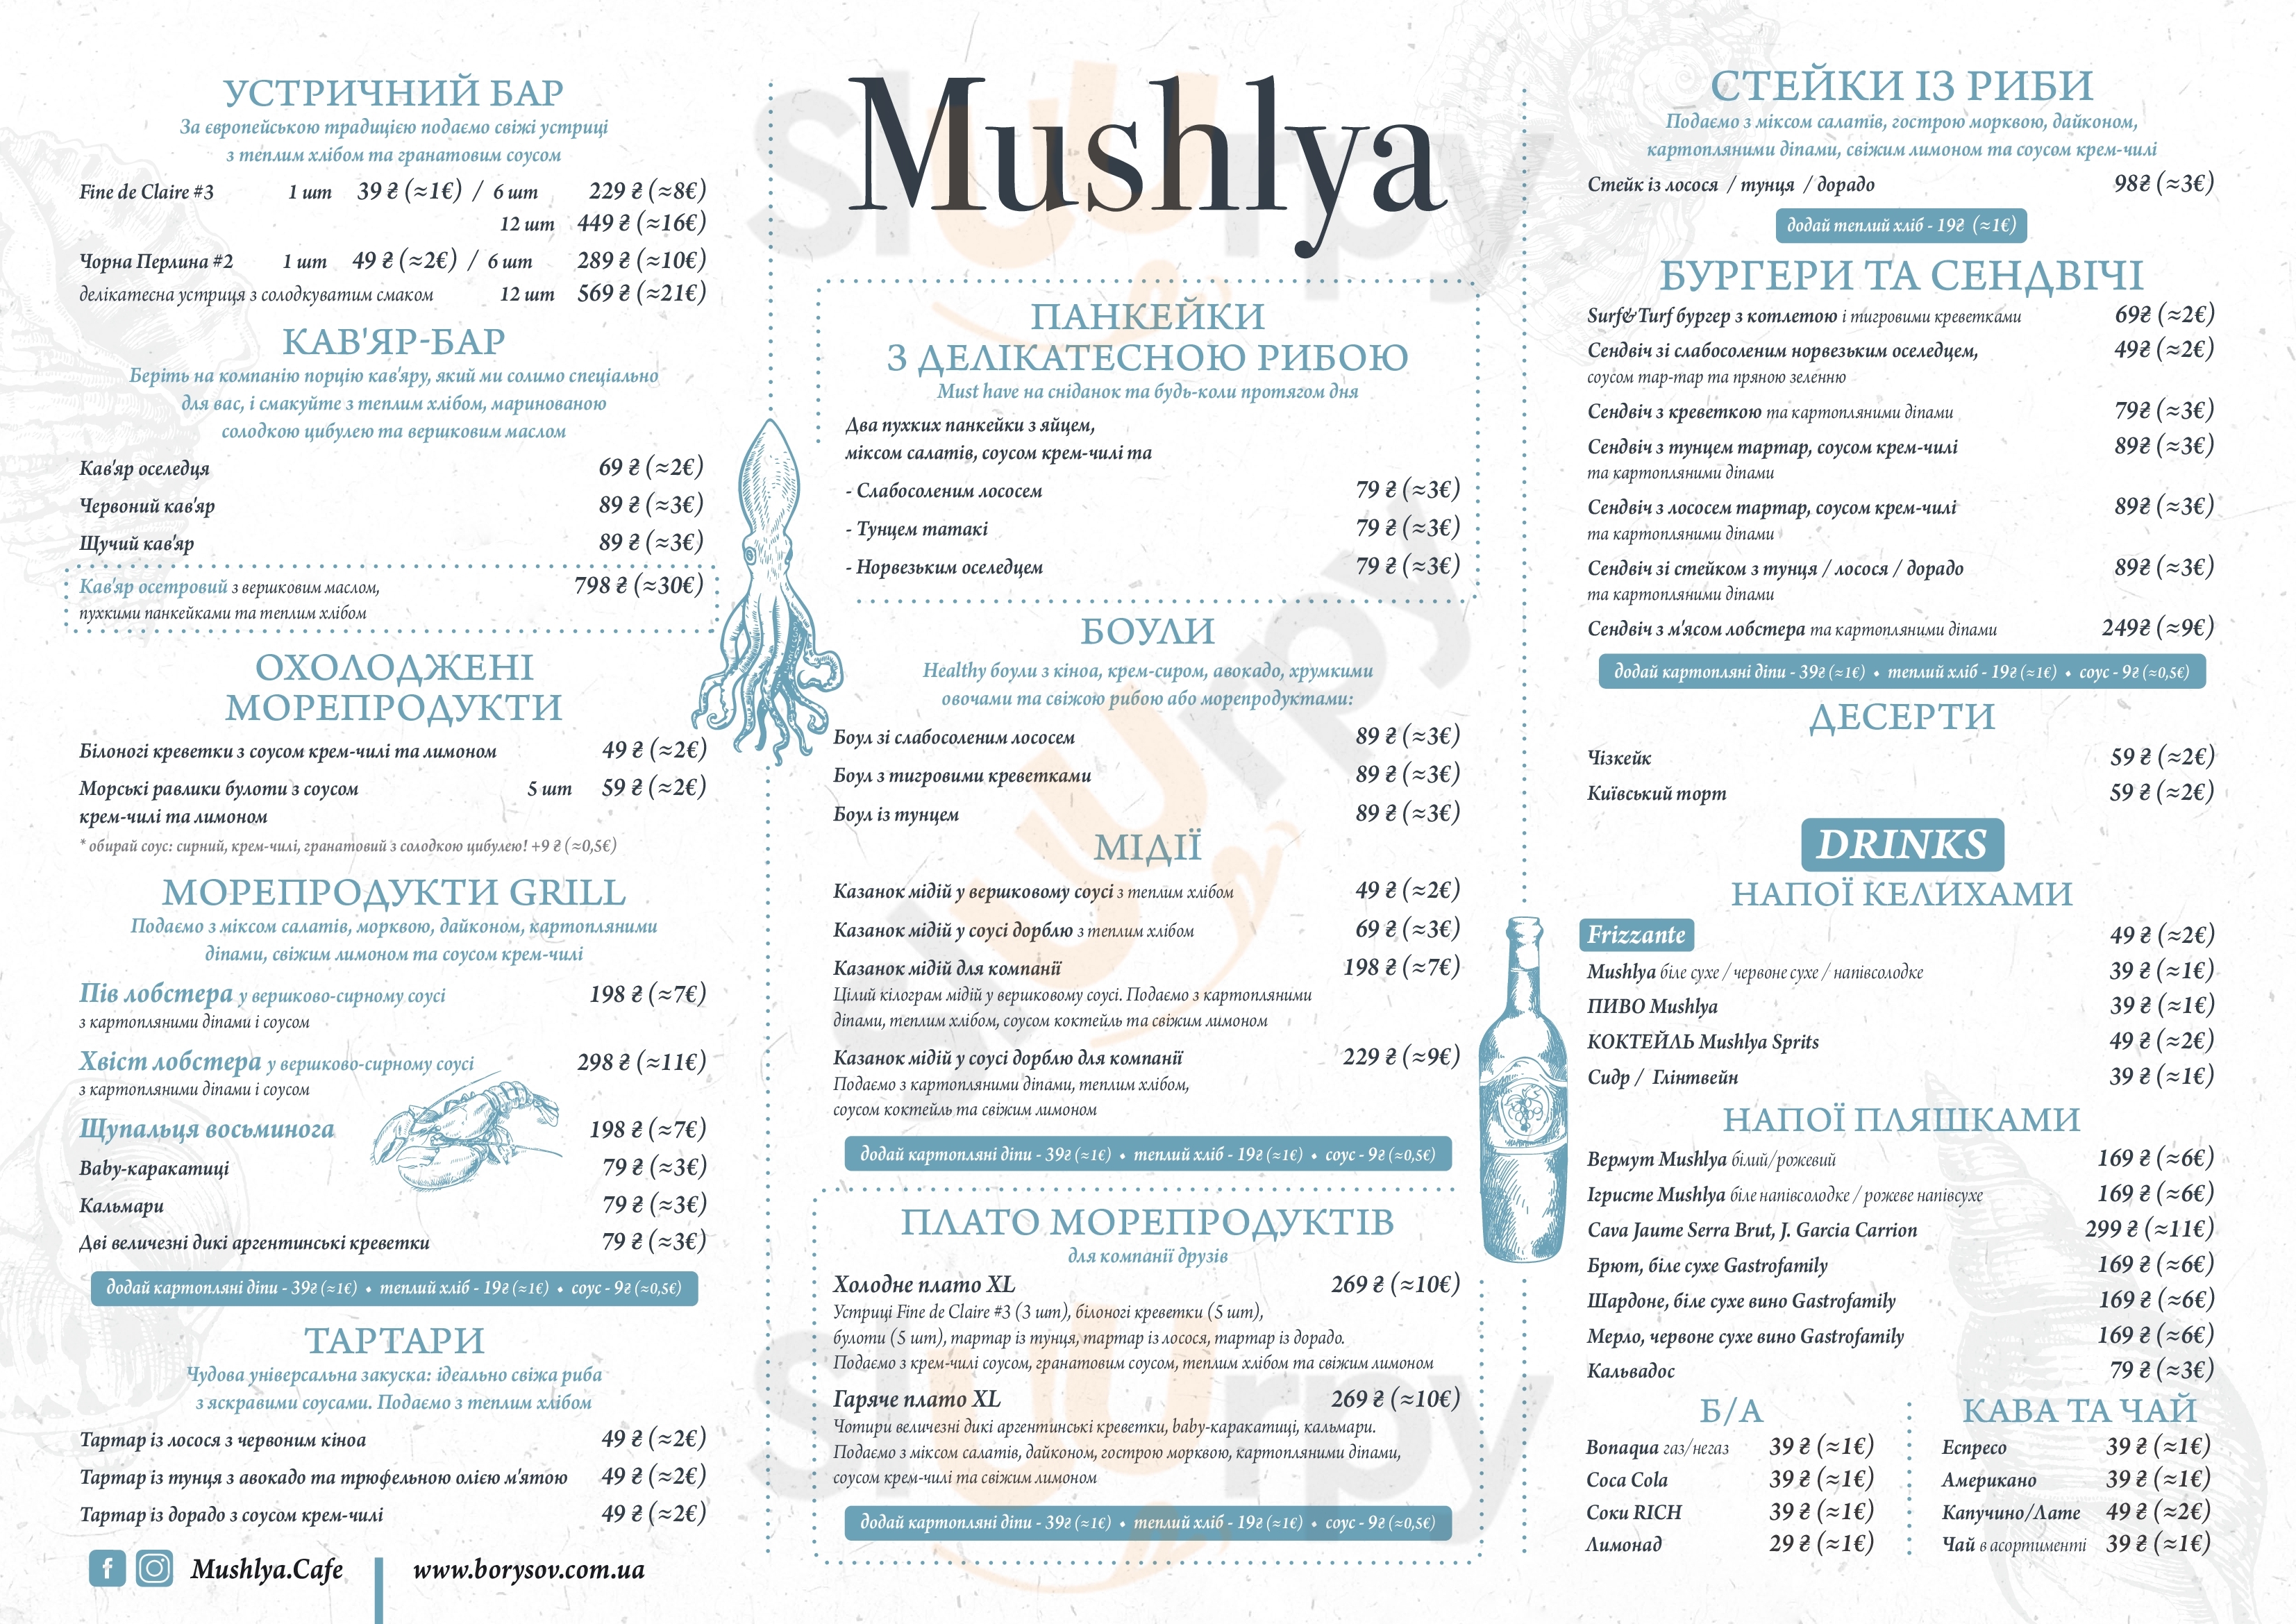 Mushlya Cafe Kharkiv Menu - 1